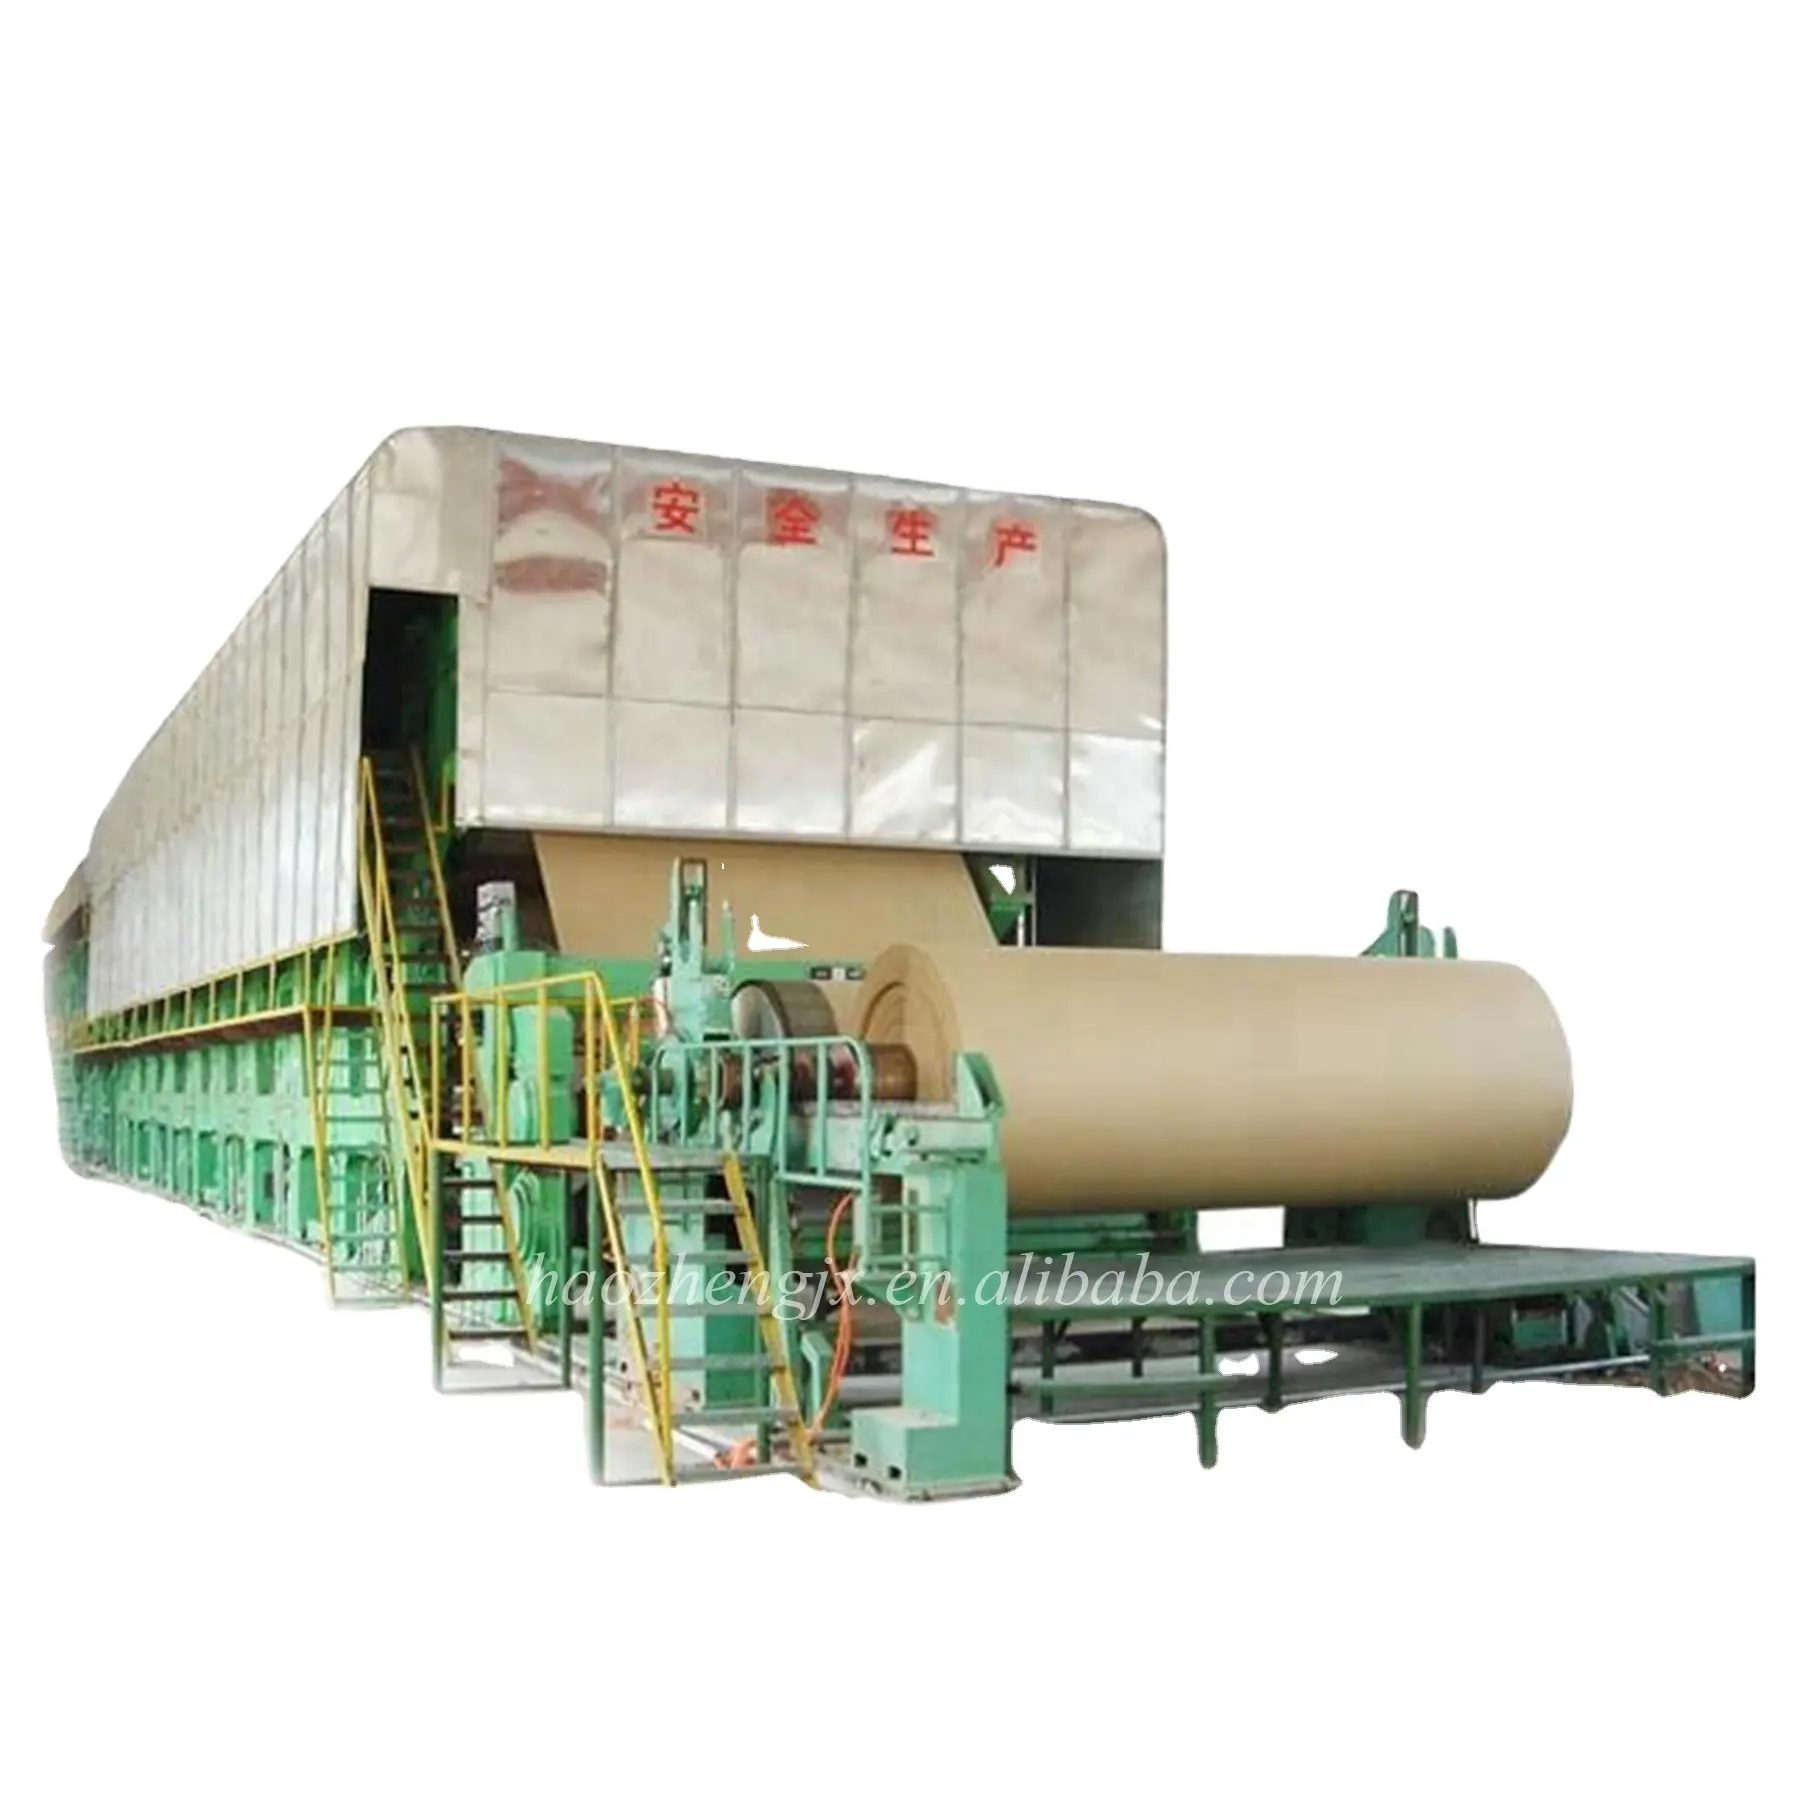 Guter Preis 40 Tonnen pro Tag Handwerks-Papiermaschine direkt vom Hersteller aus China